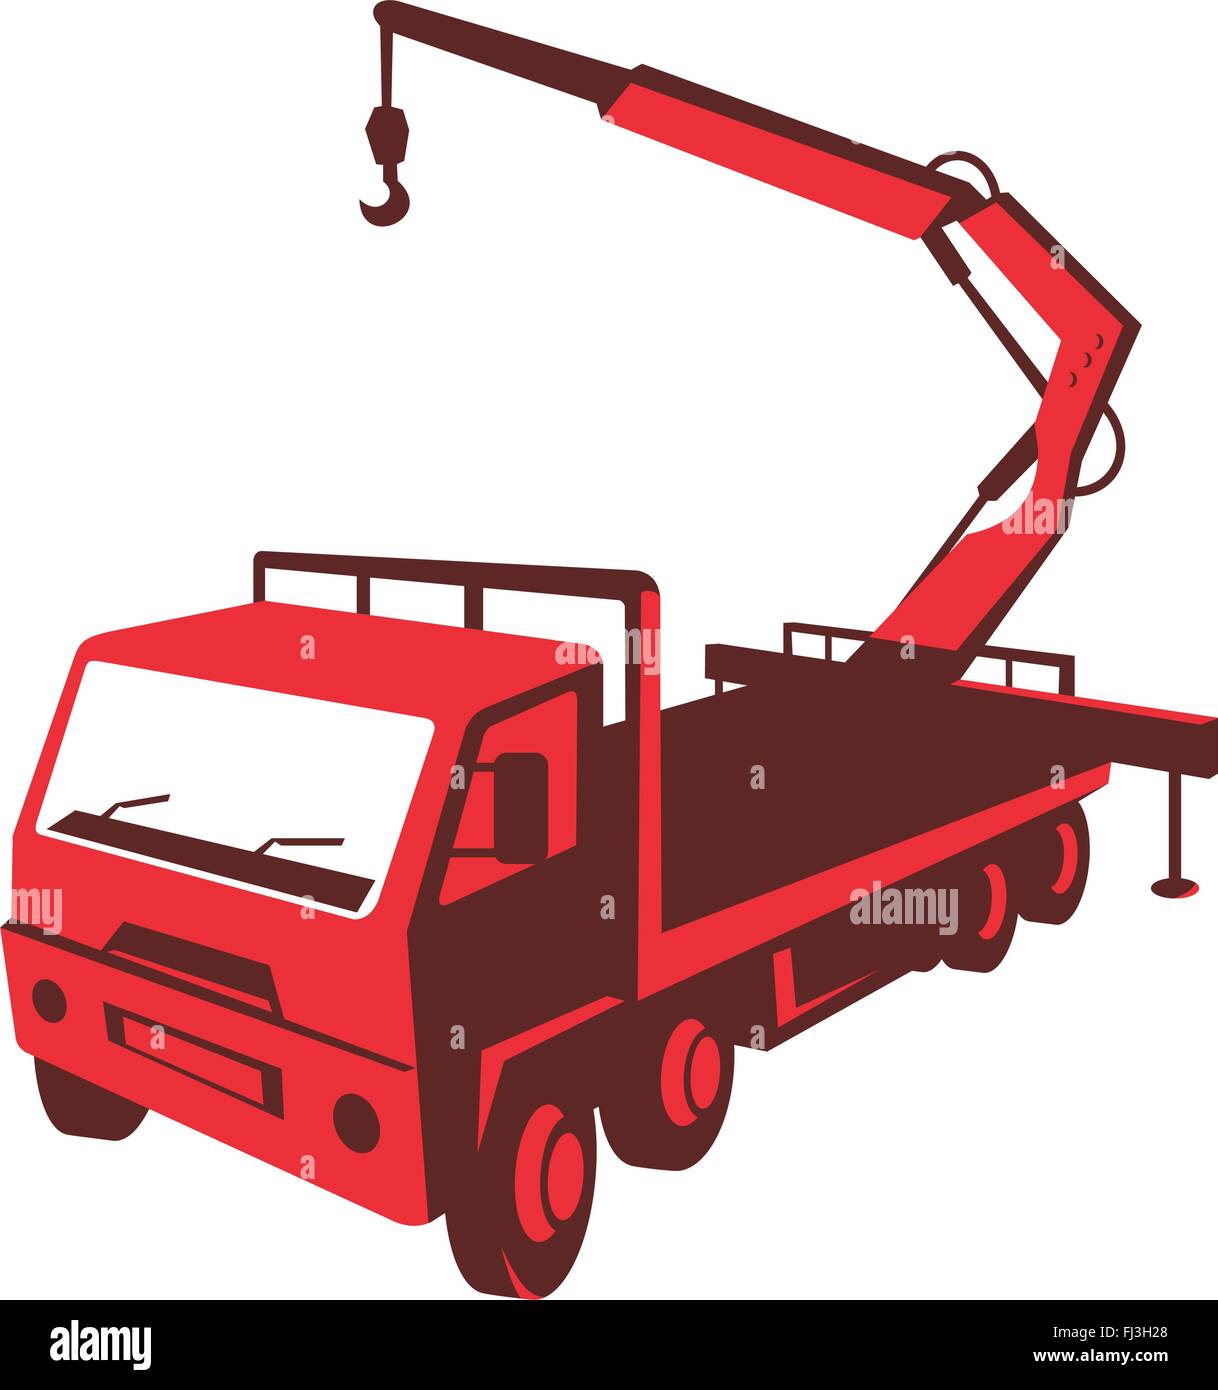 Illustrazione vettoriale di un carrello montato gru idraulica Cartagine con braccio idraulico paranco fatto in stile retrò visto da un alto Illustrazione Vettoriale